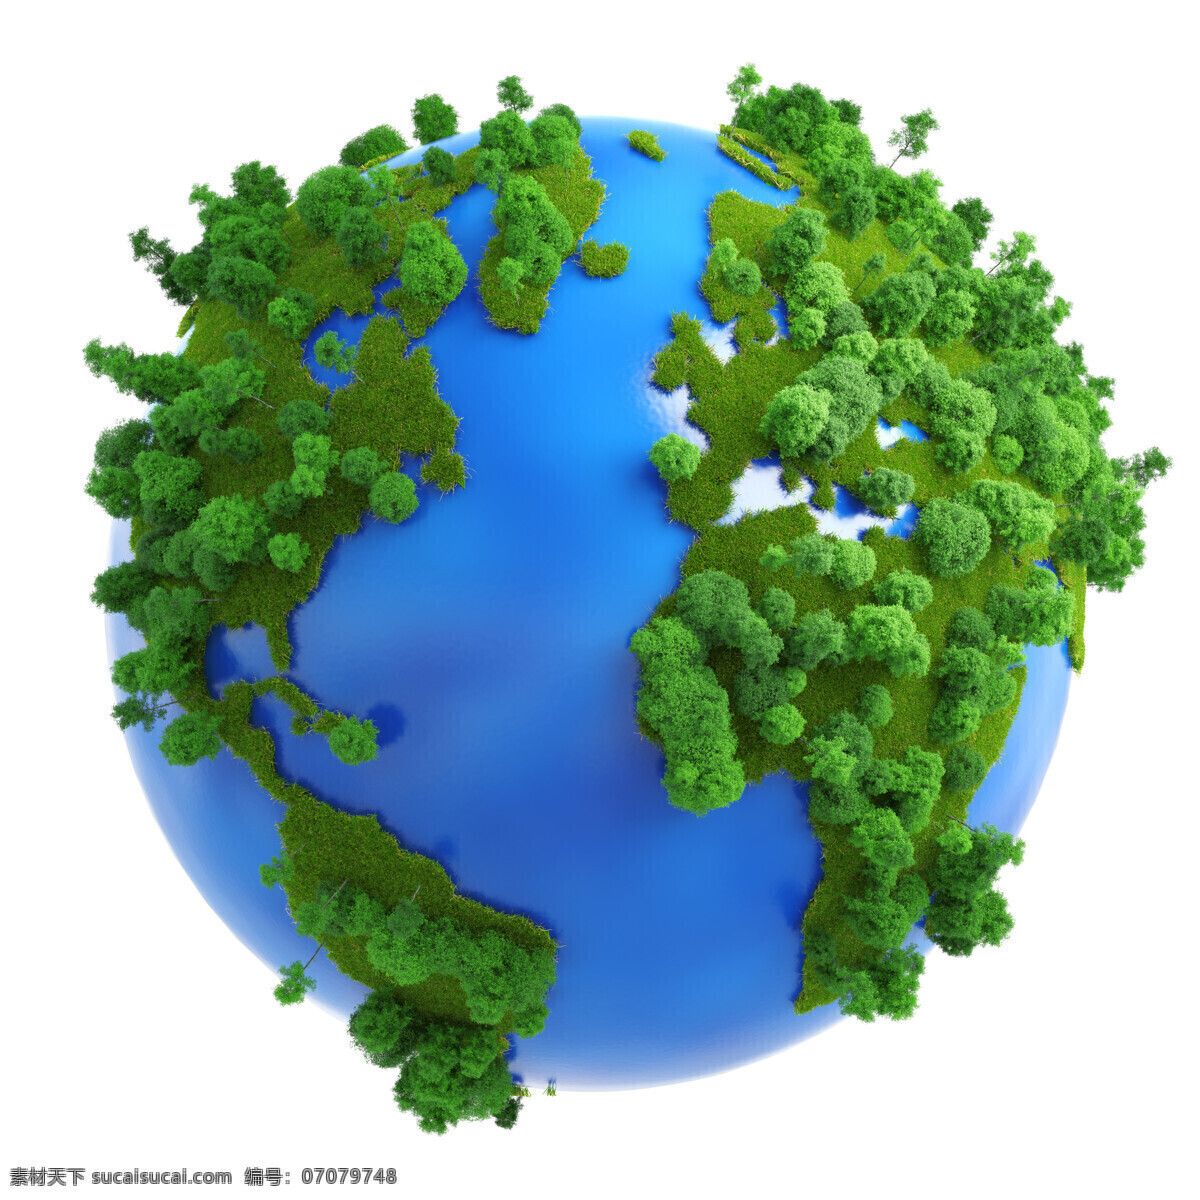 创意 绿色环保 环保概念 地球保护 生态环保 节能环保 环保图片 风景图片